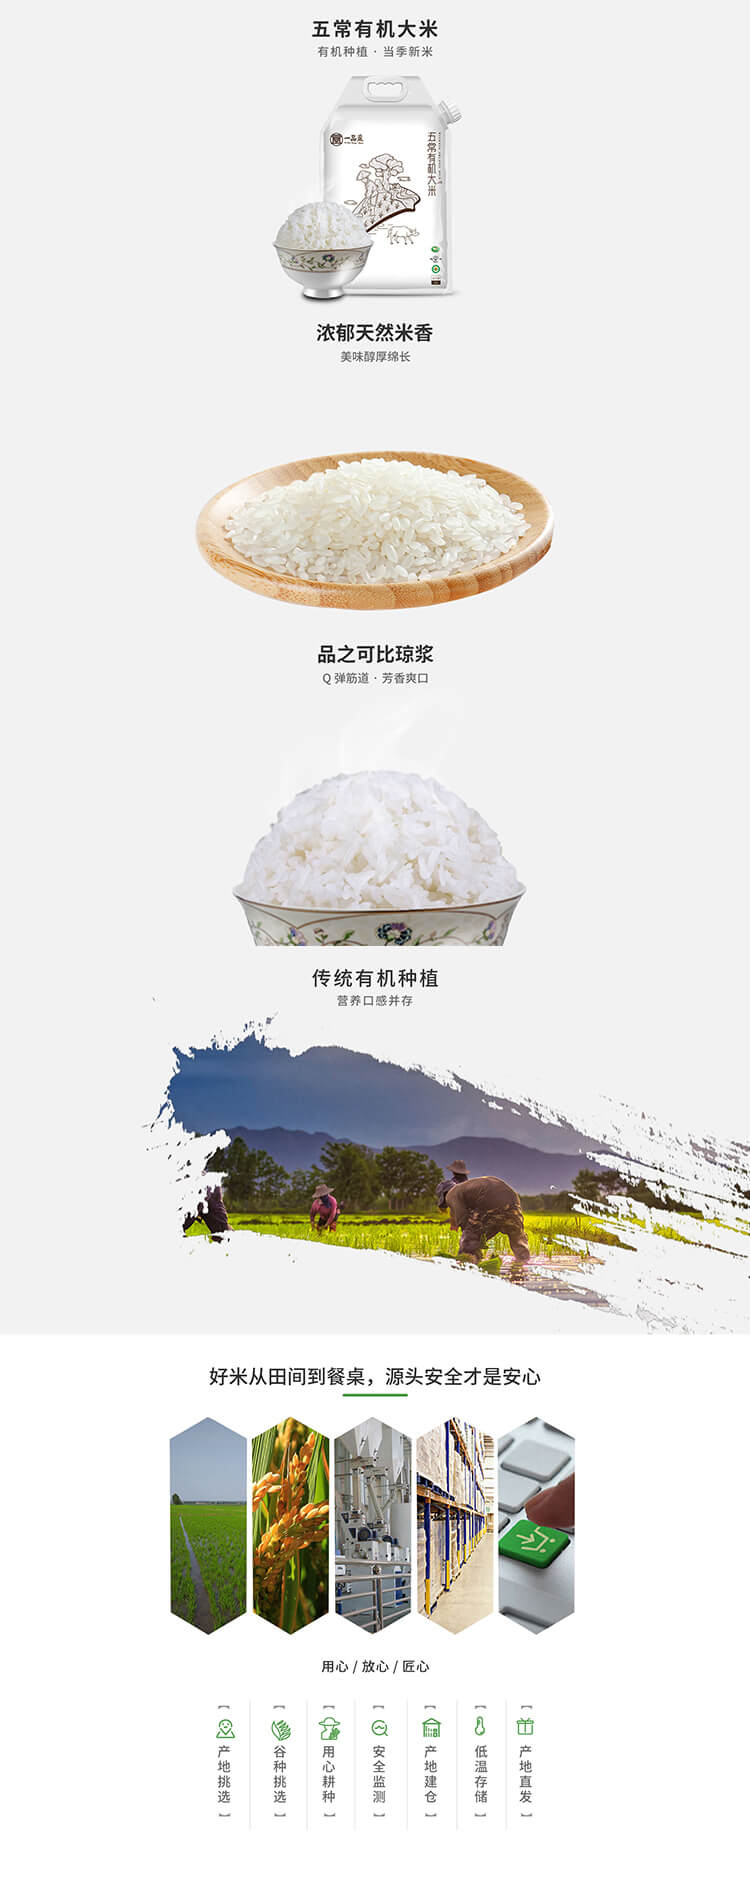 中国稻花香鲜米多少钱_中国大米的营养价值及功效-深圳大谷米业有限公司